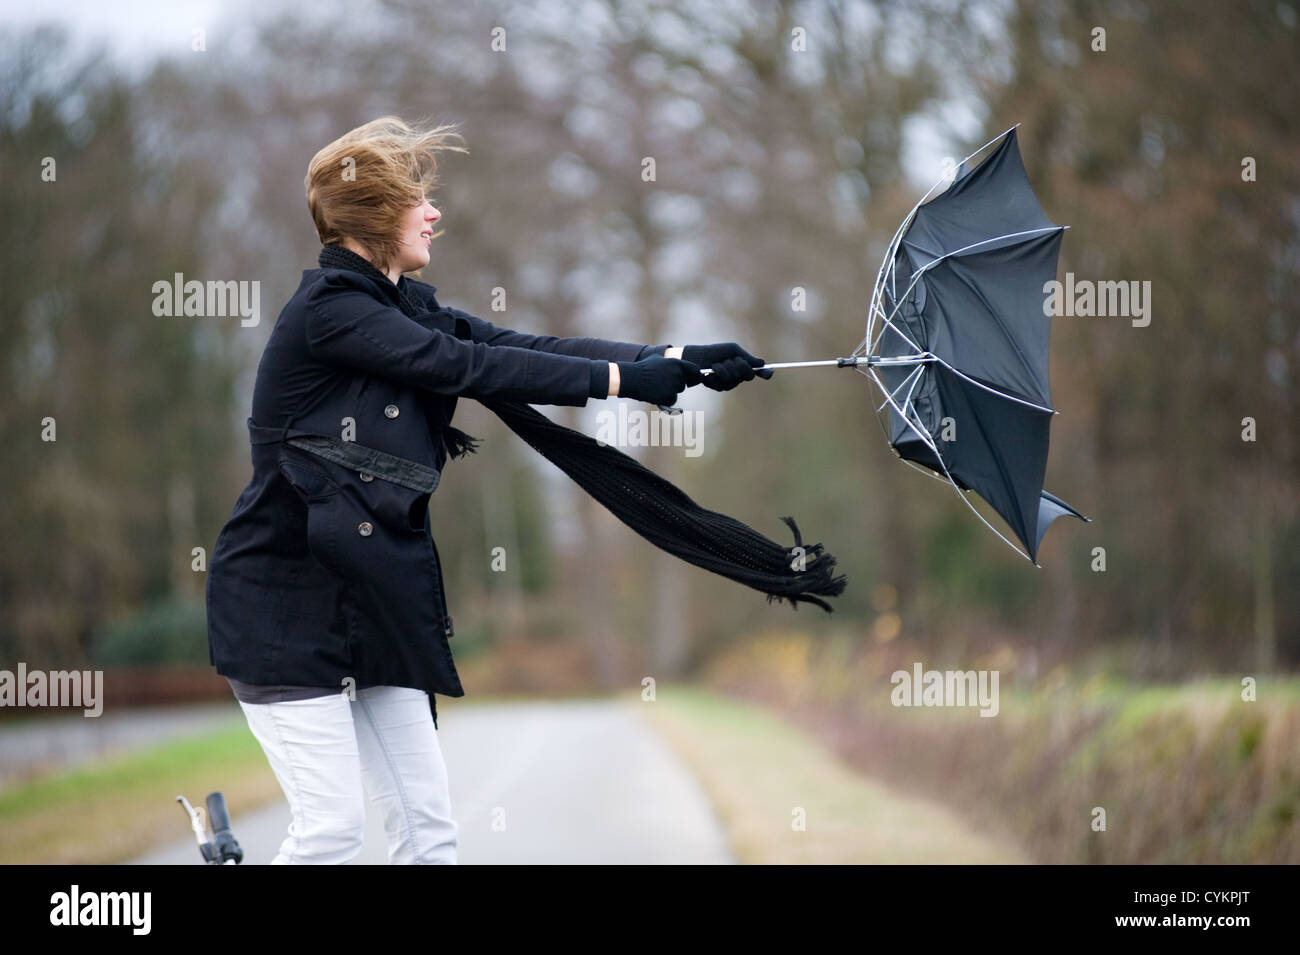 Eine junge Frau kämpft gegen den Sturm mit ihrem Schirm Stockfoto